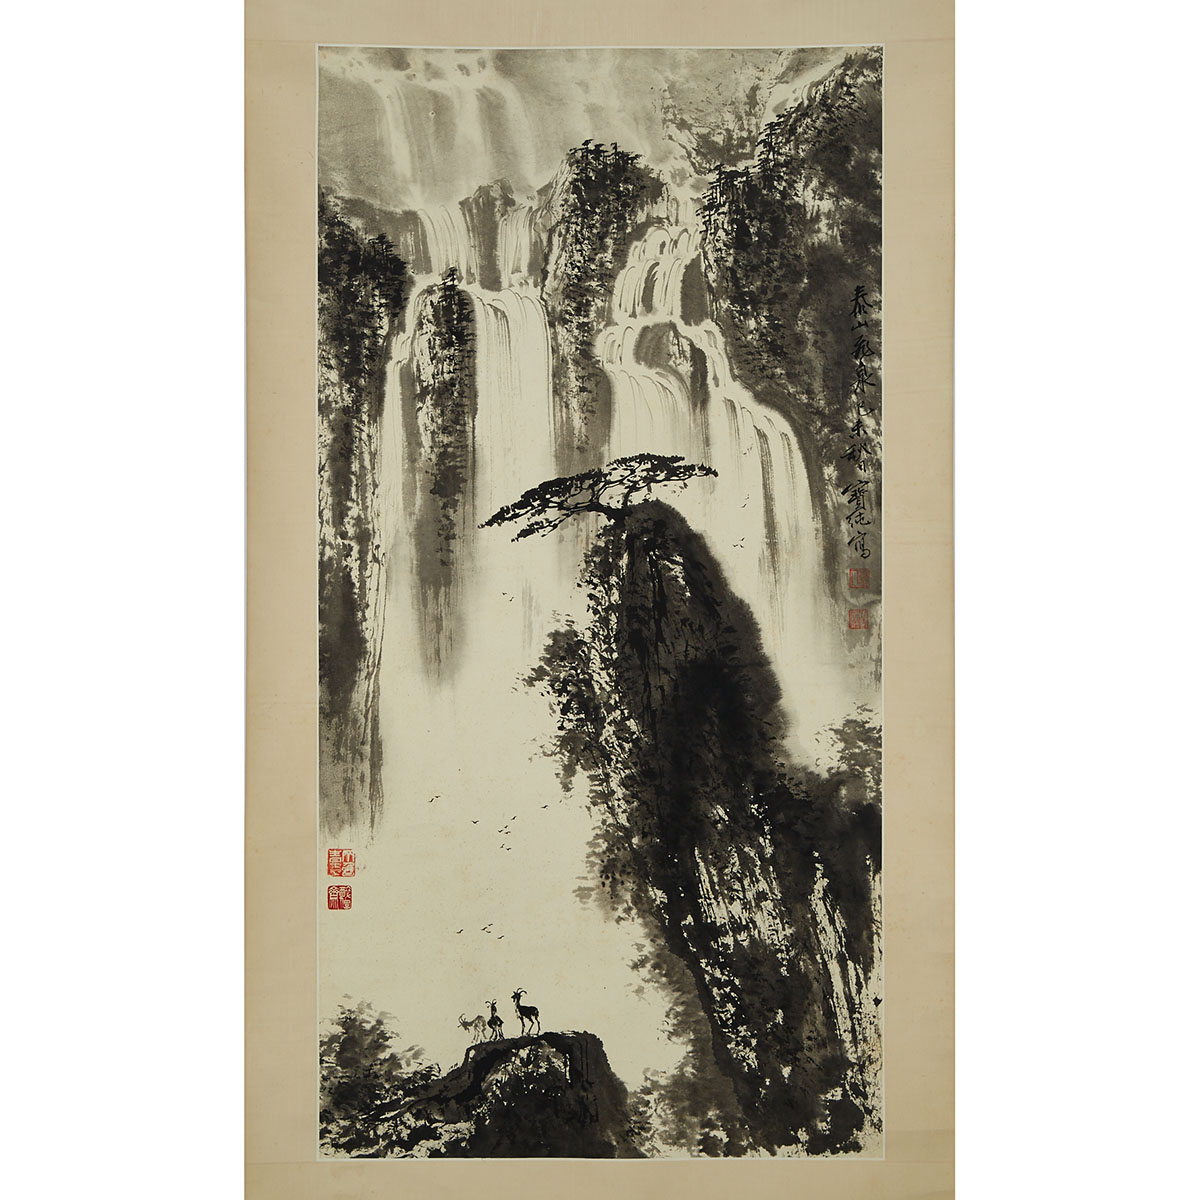 Liu Baochun 劉寶純 (1932-), Waterfall at Mount Tai